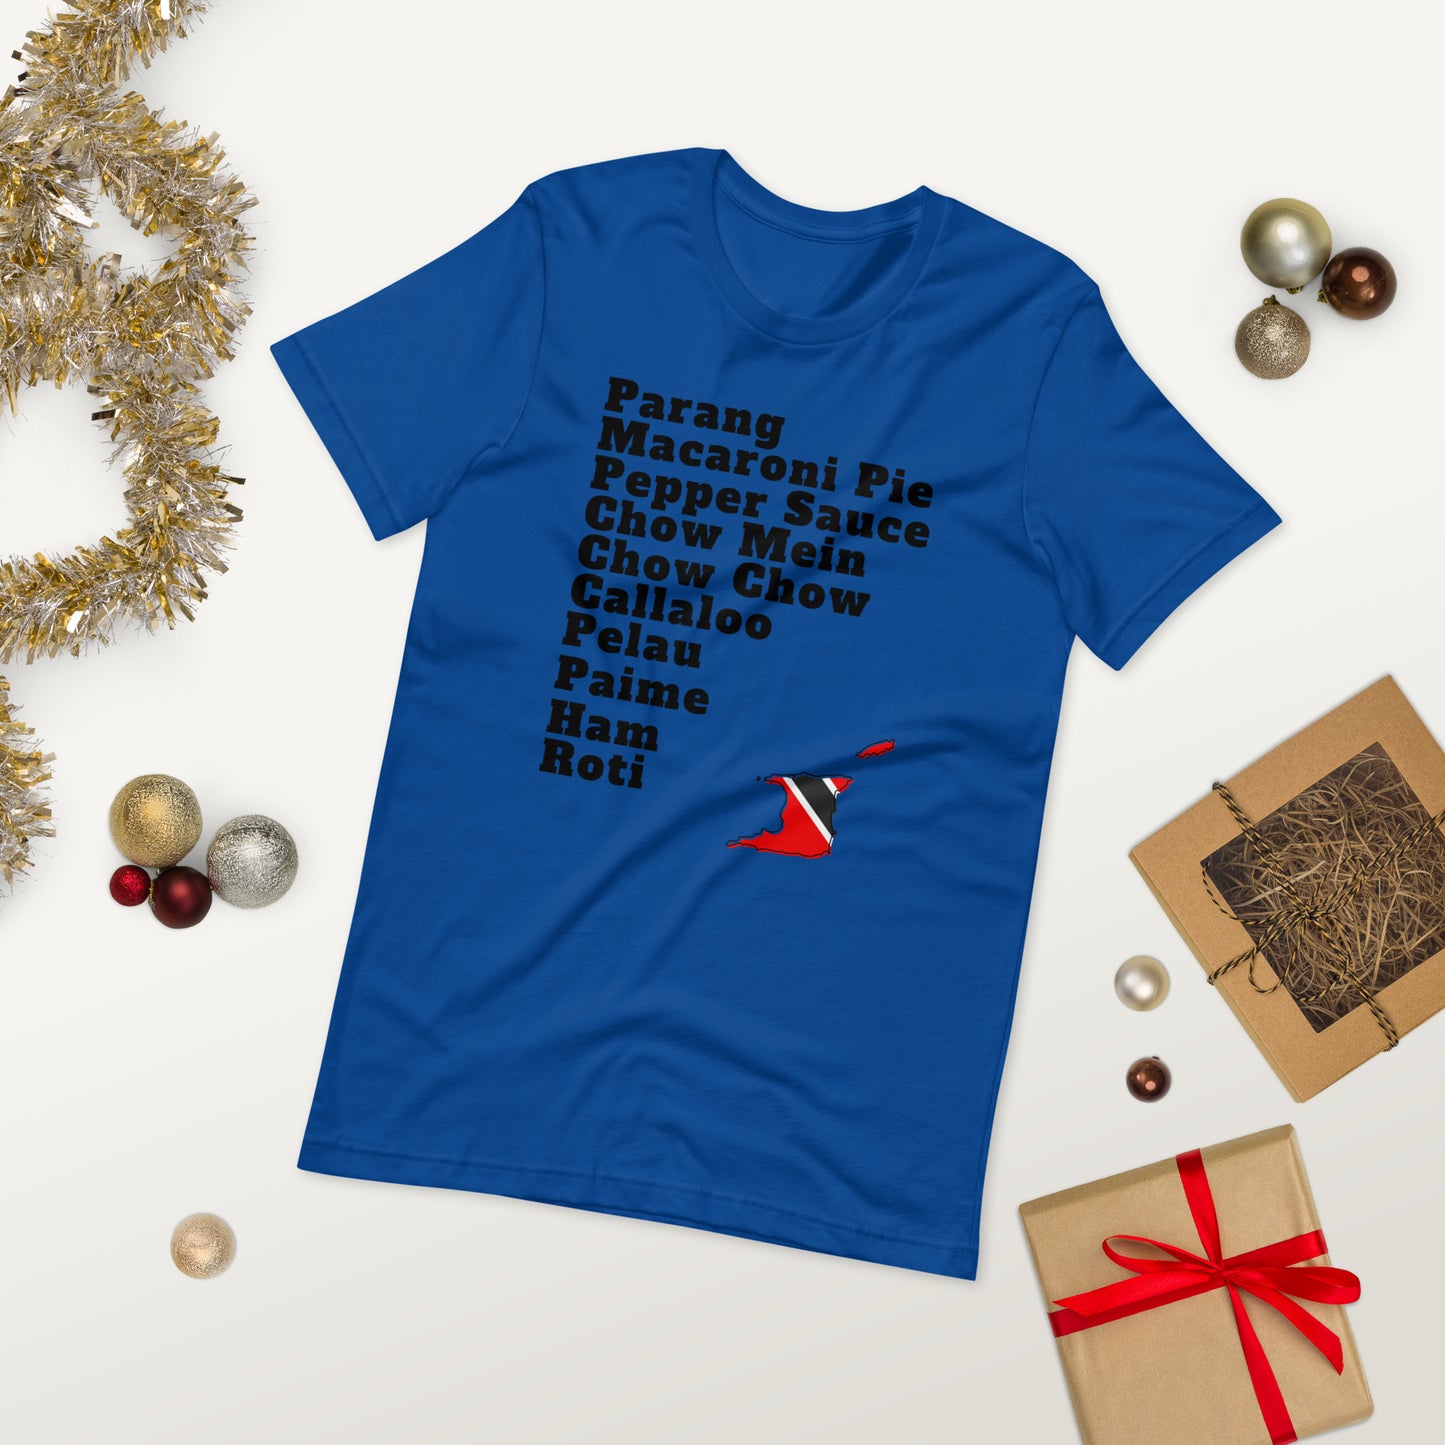 Trinidad and Tobago Holiday T-shirt - A